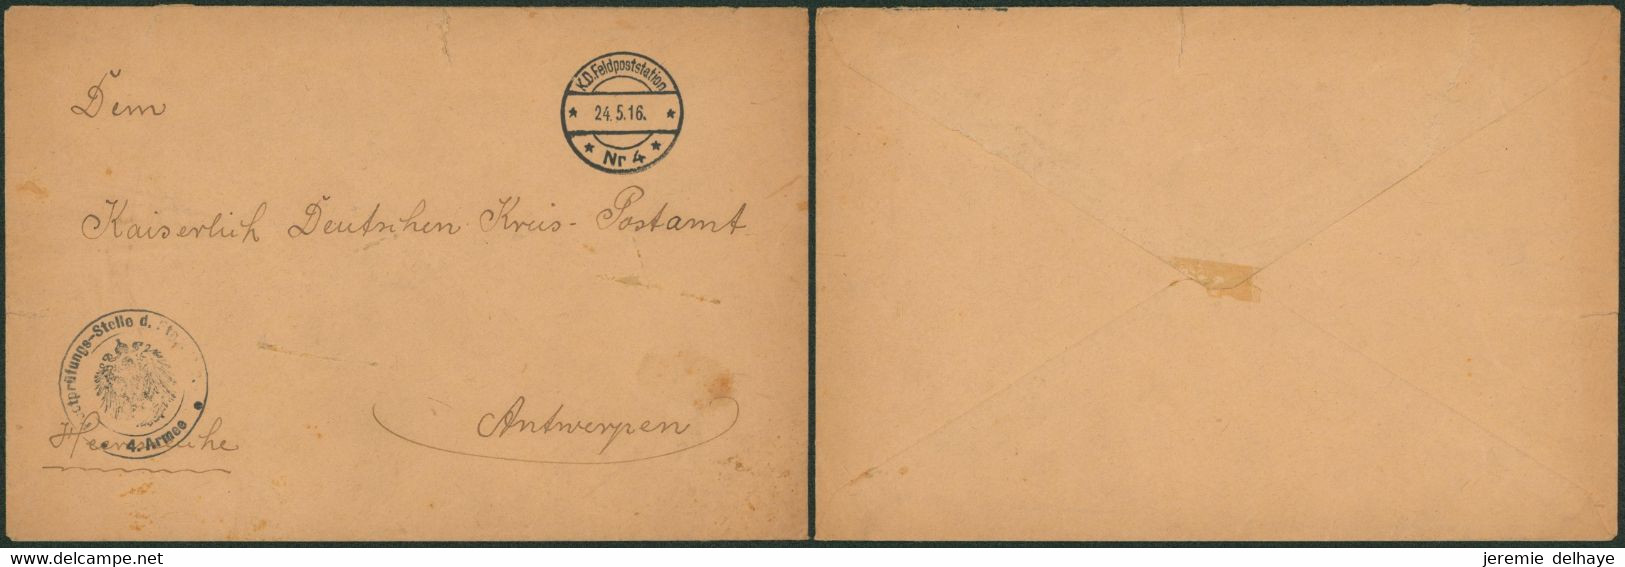 Guerre 14-18 - Feldpostbrief + Cachet Avec Aigle "Postprüfungs-Stelle D. Etappe / 4. Armee" (Nr 4, 1916) > Antwerpen - Army: German